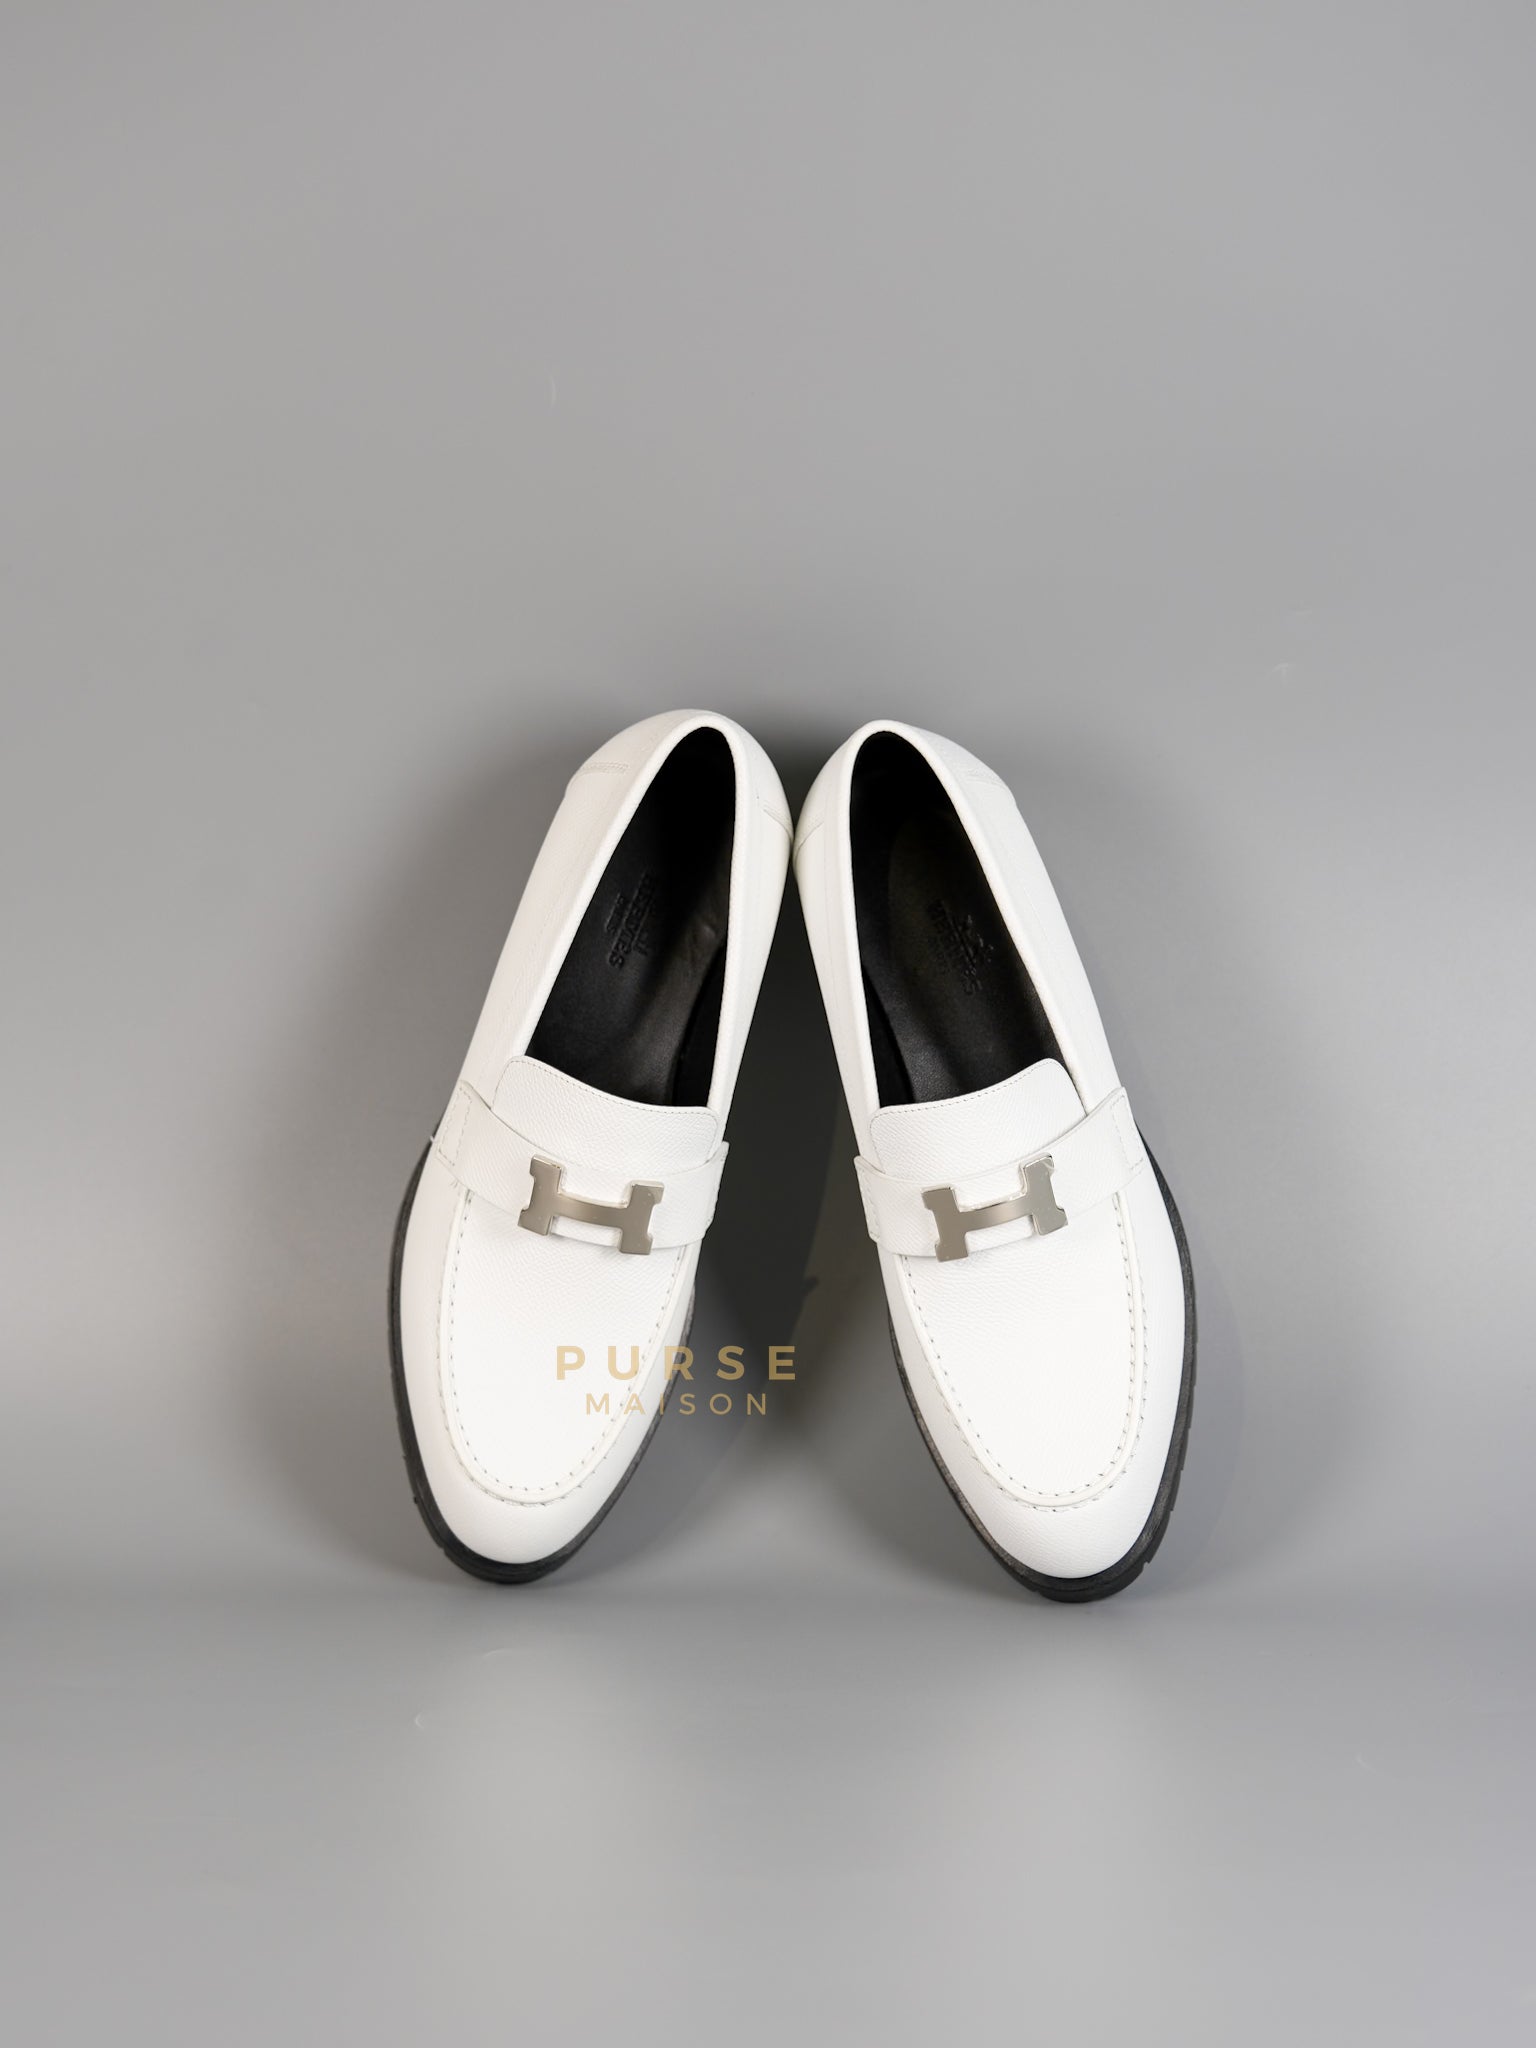 Paris White Loafers Size 37 EU (25cm) | Purse Maison Luxury Bags Shop